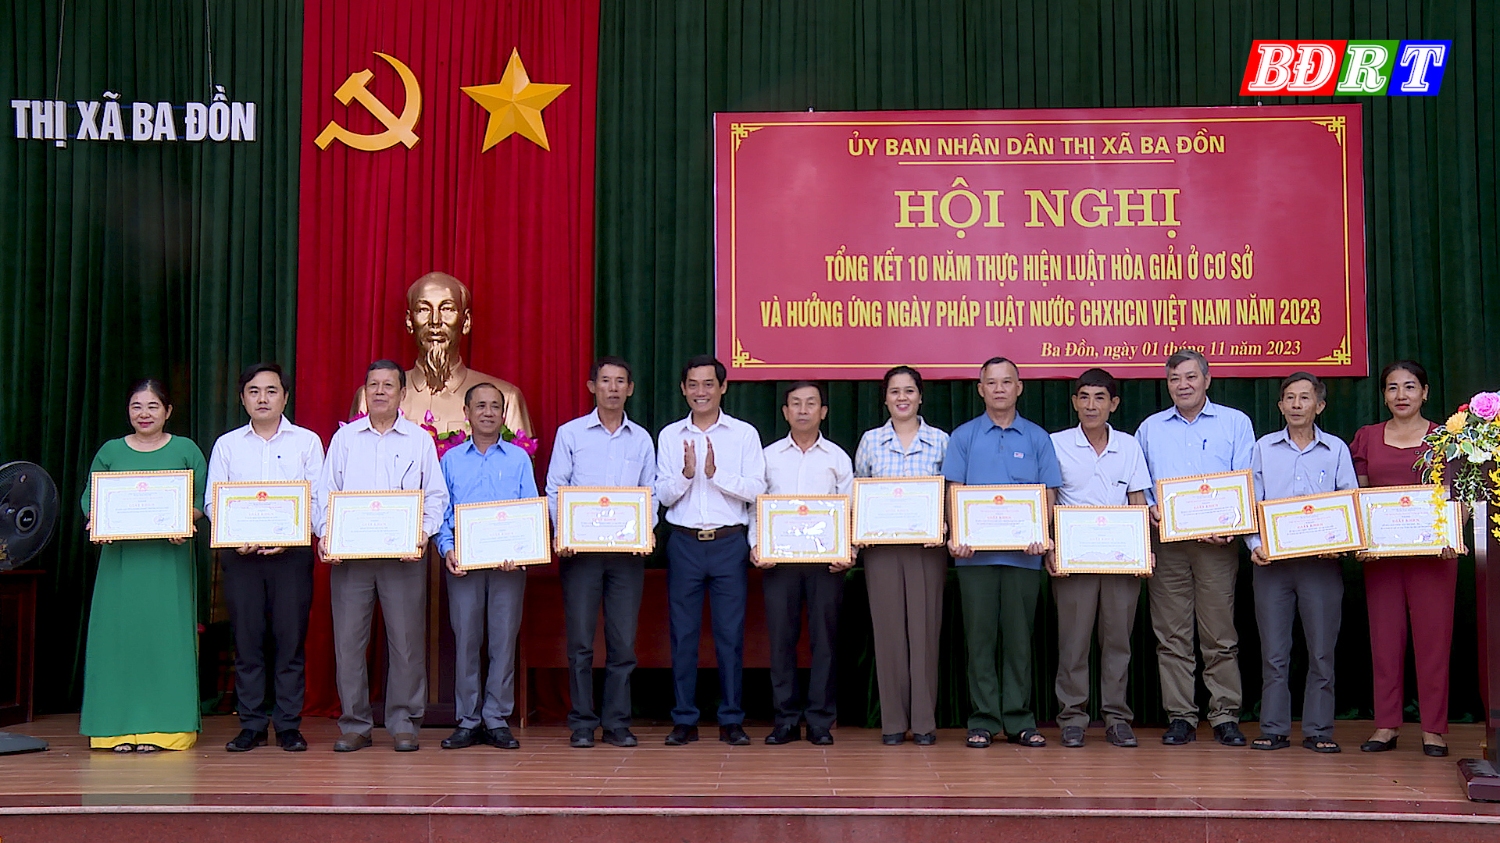 UBND thị xã Ba Đồn khen thưởng cho 12 tập thể có thành tích xuất sắc trong công tác hòa giải ở cơ sở